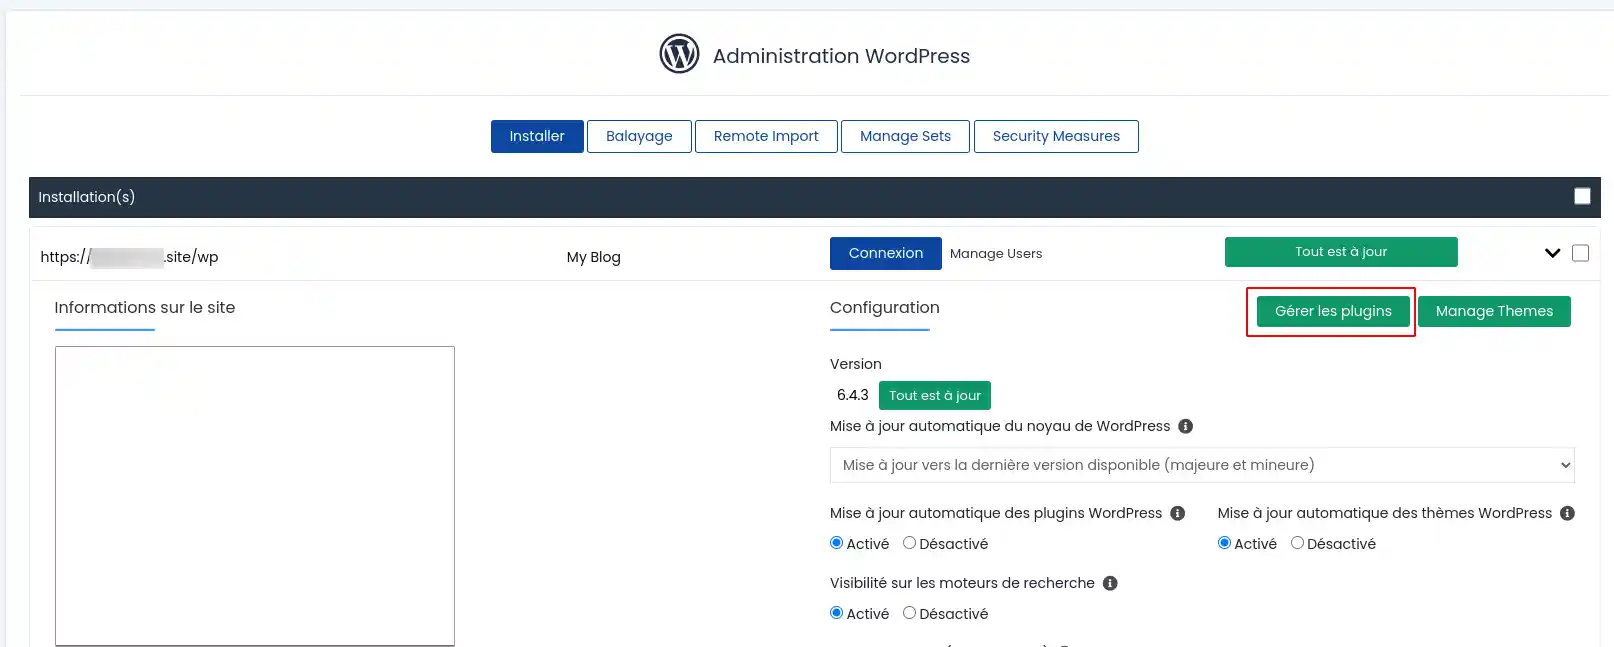 Comment trouver une extension WordPress problématique ?